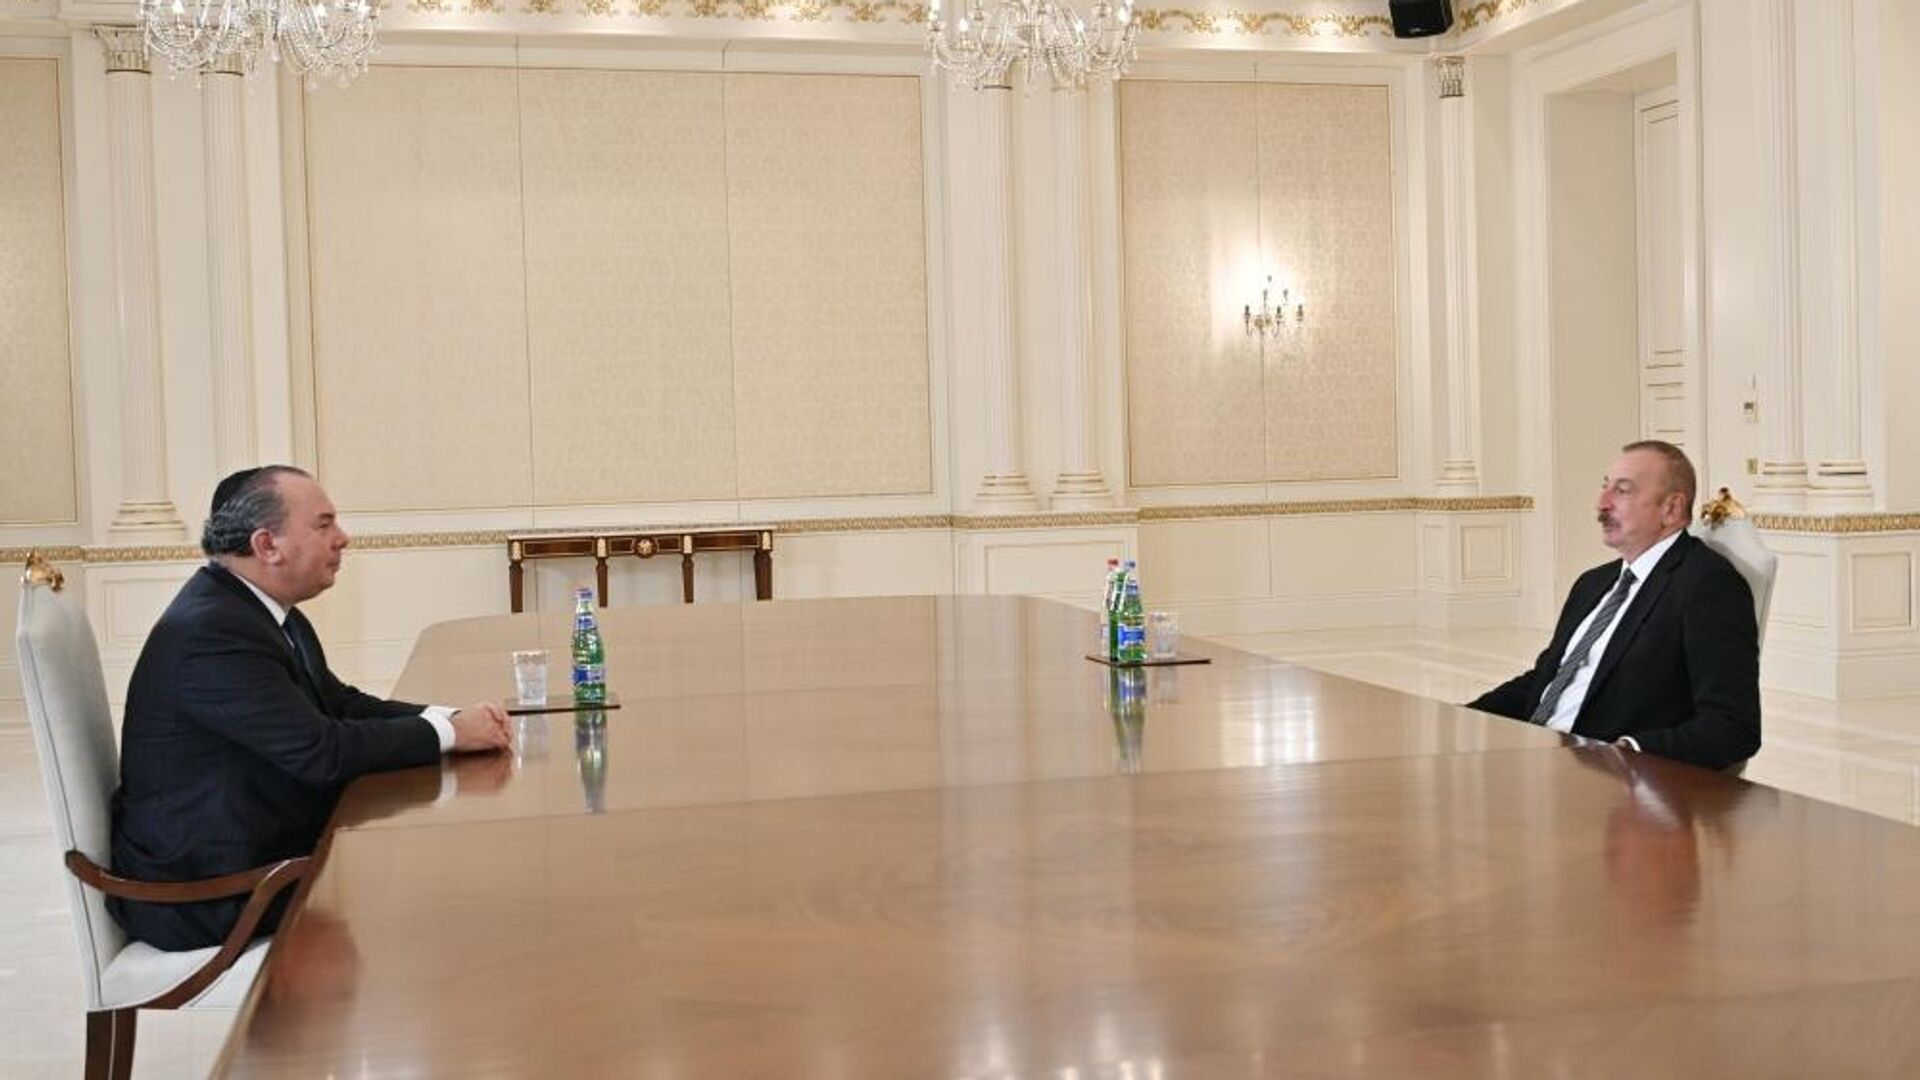  Президент Ильхам Алиев принял президента и учредителя Фонда этнического взаимопонимания США Марка Шнайера - Sputnik Азербайджан, 1920, 02.12.2021